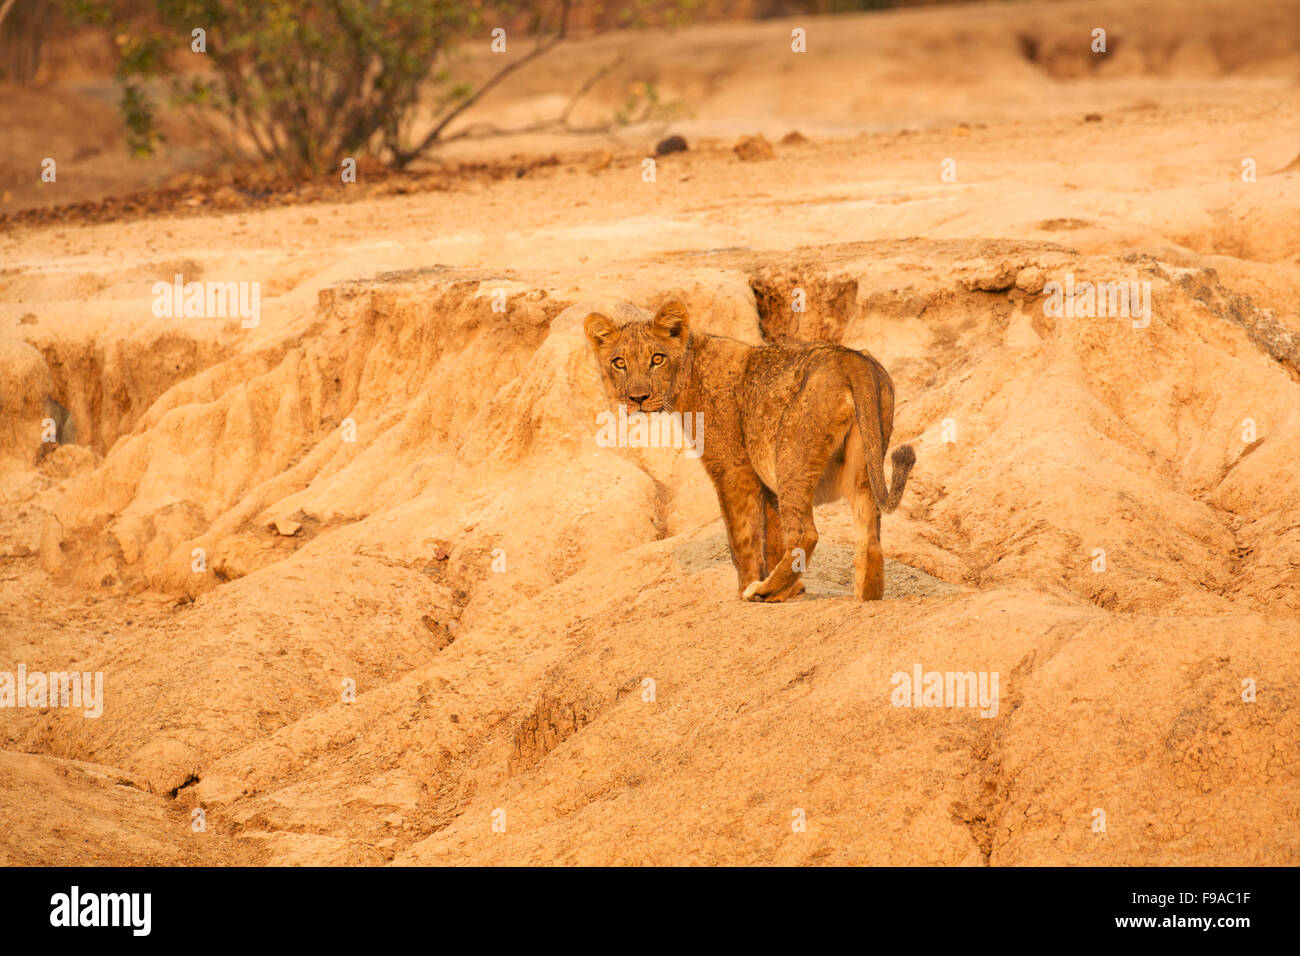 Lion cub walking on sand formations, Mana Pools, Zimbabwe Stock Photo